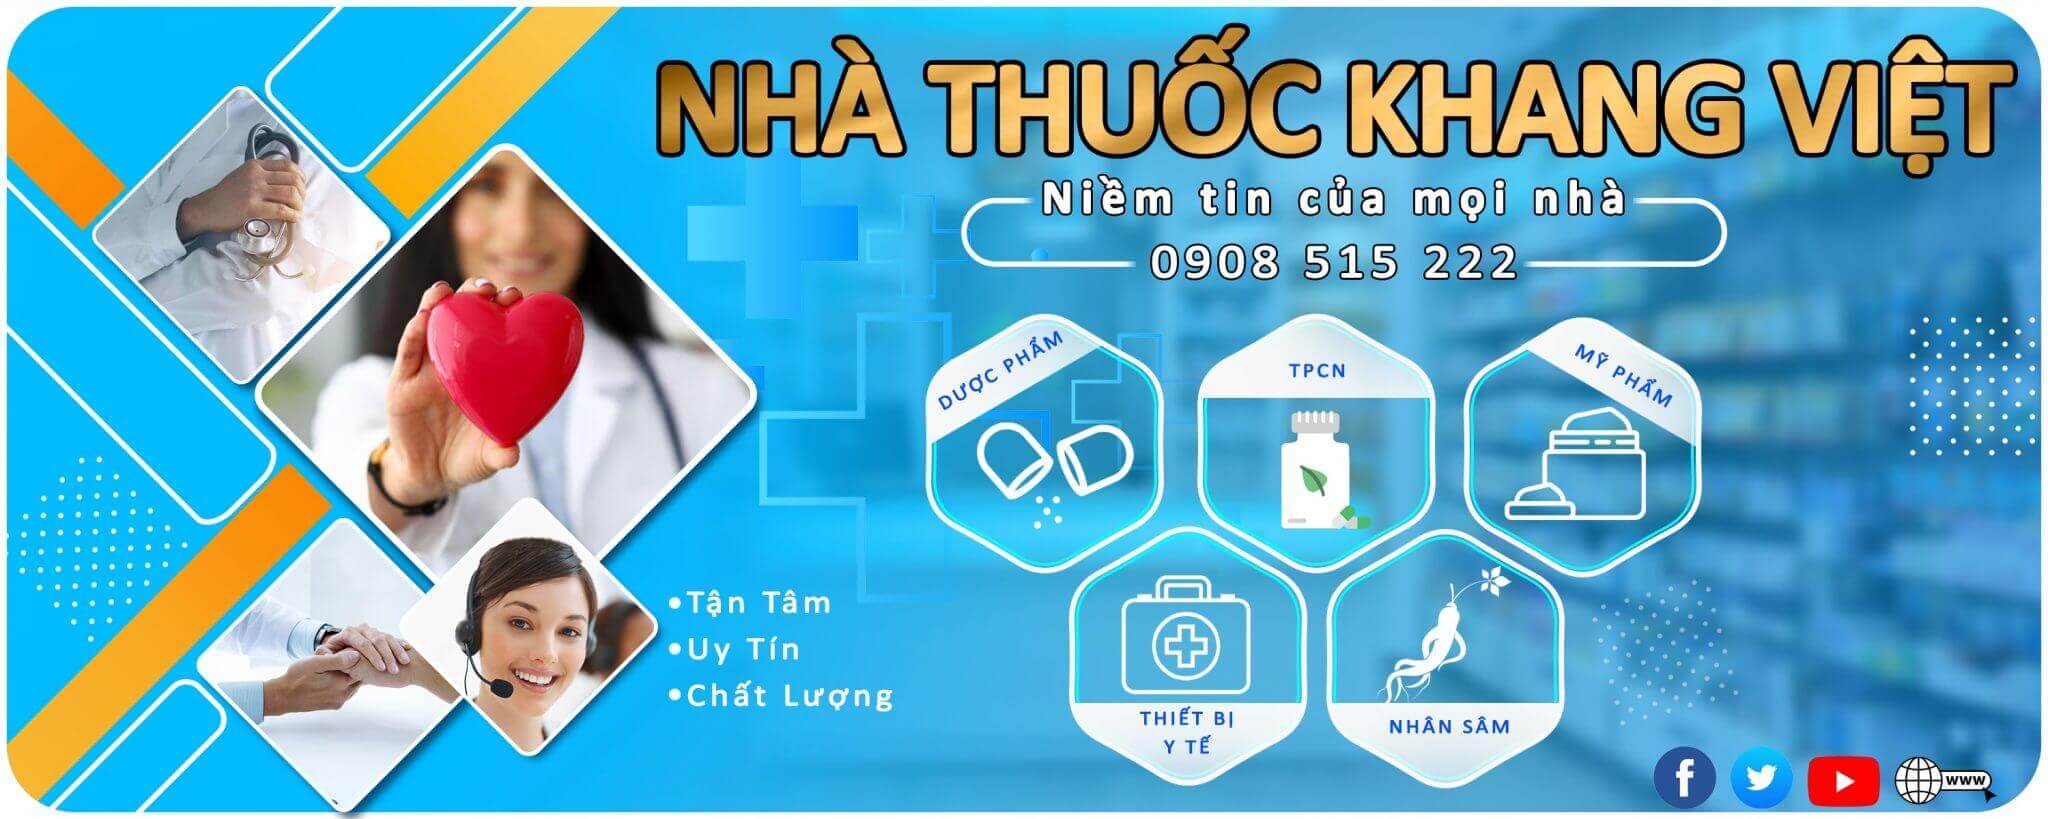 Nha Thuoc Khang Viet Banner Min 2048x819 (1)